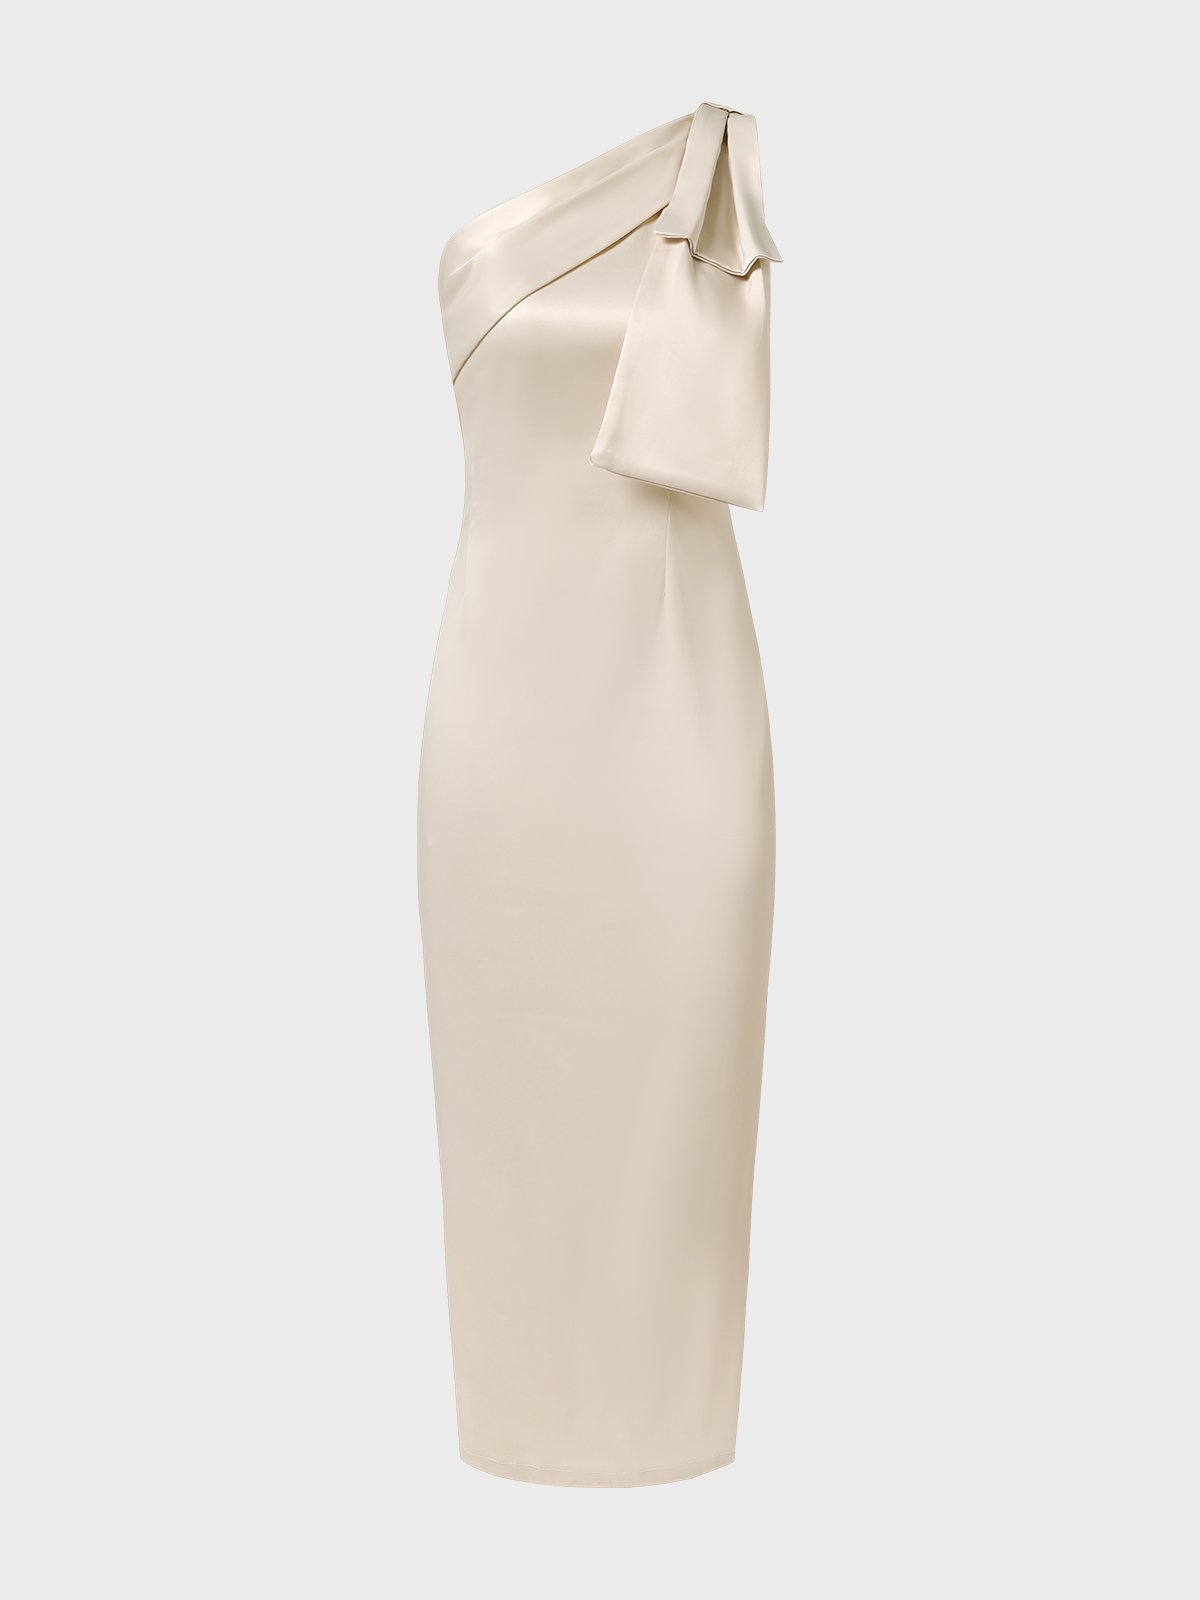 Elegant Tight Satin Asymmetrical Medium Elasticity Party Dress